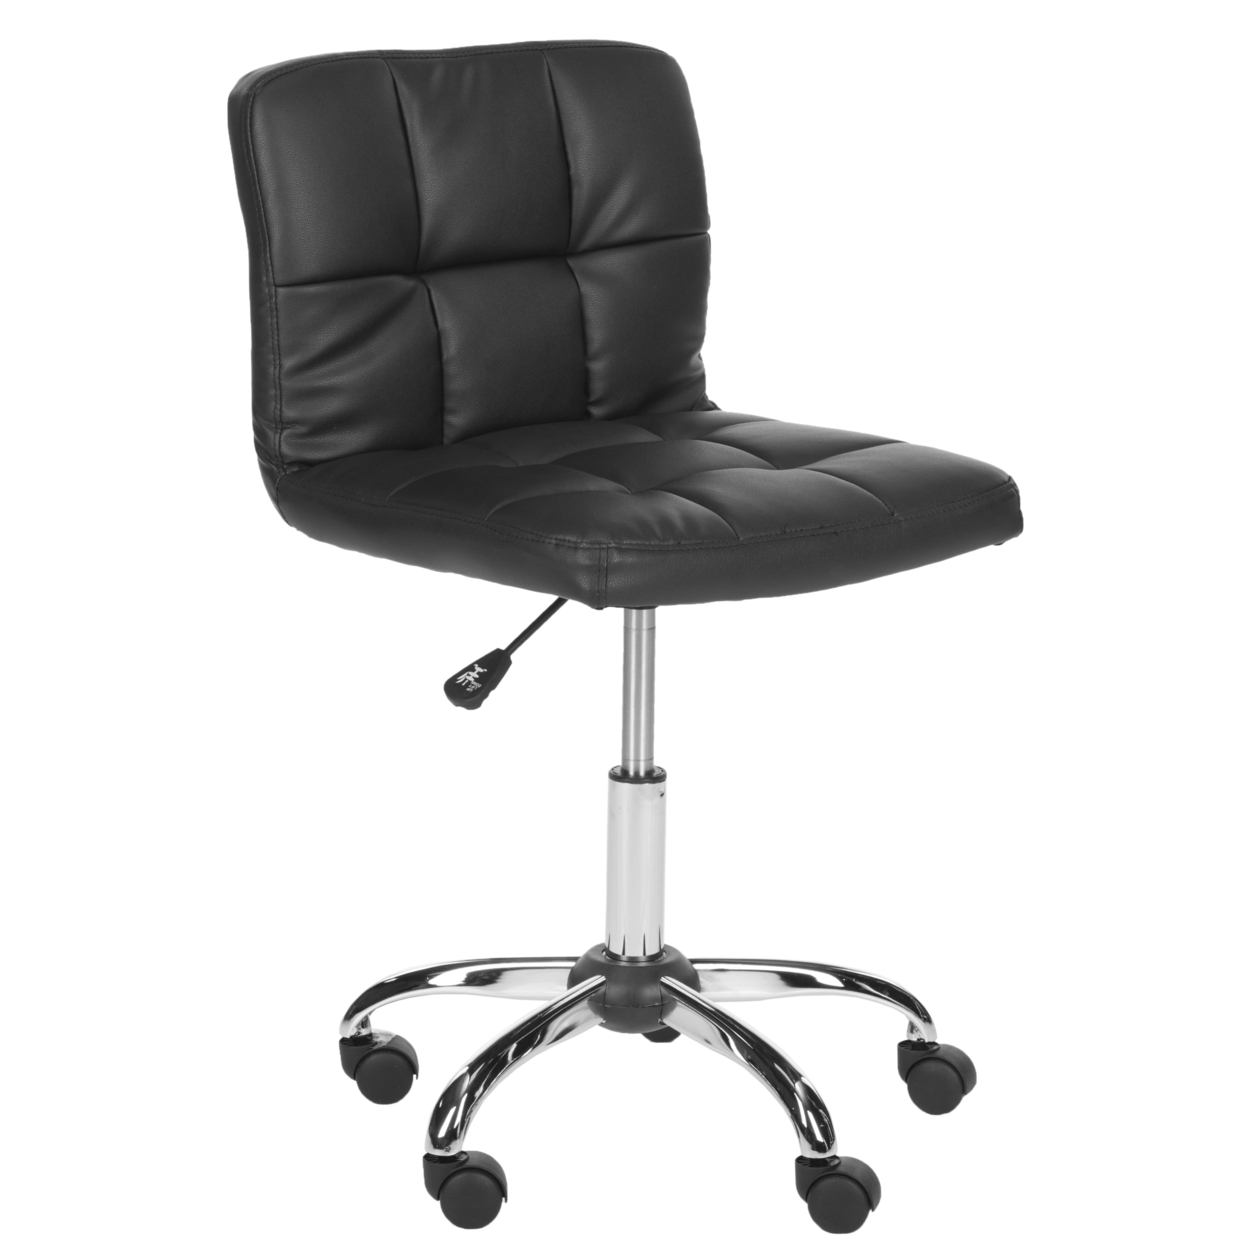 SAFAVIEH Brunner Desk Chair Black